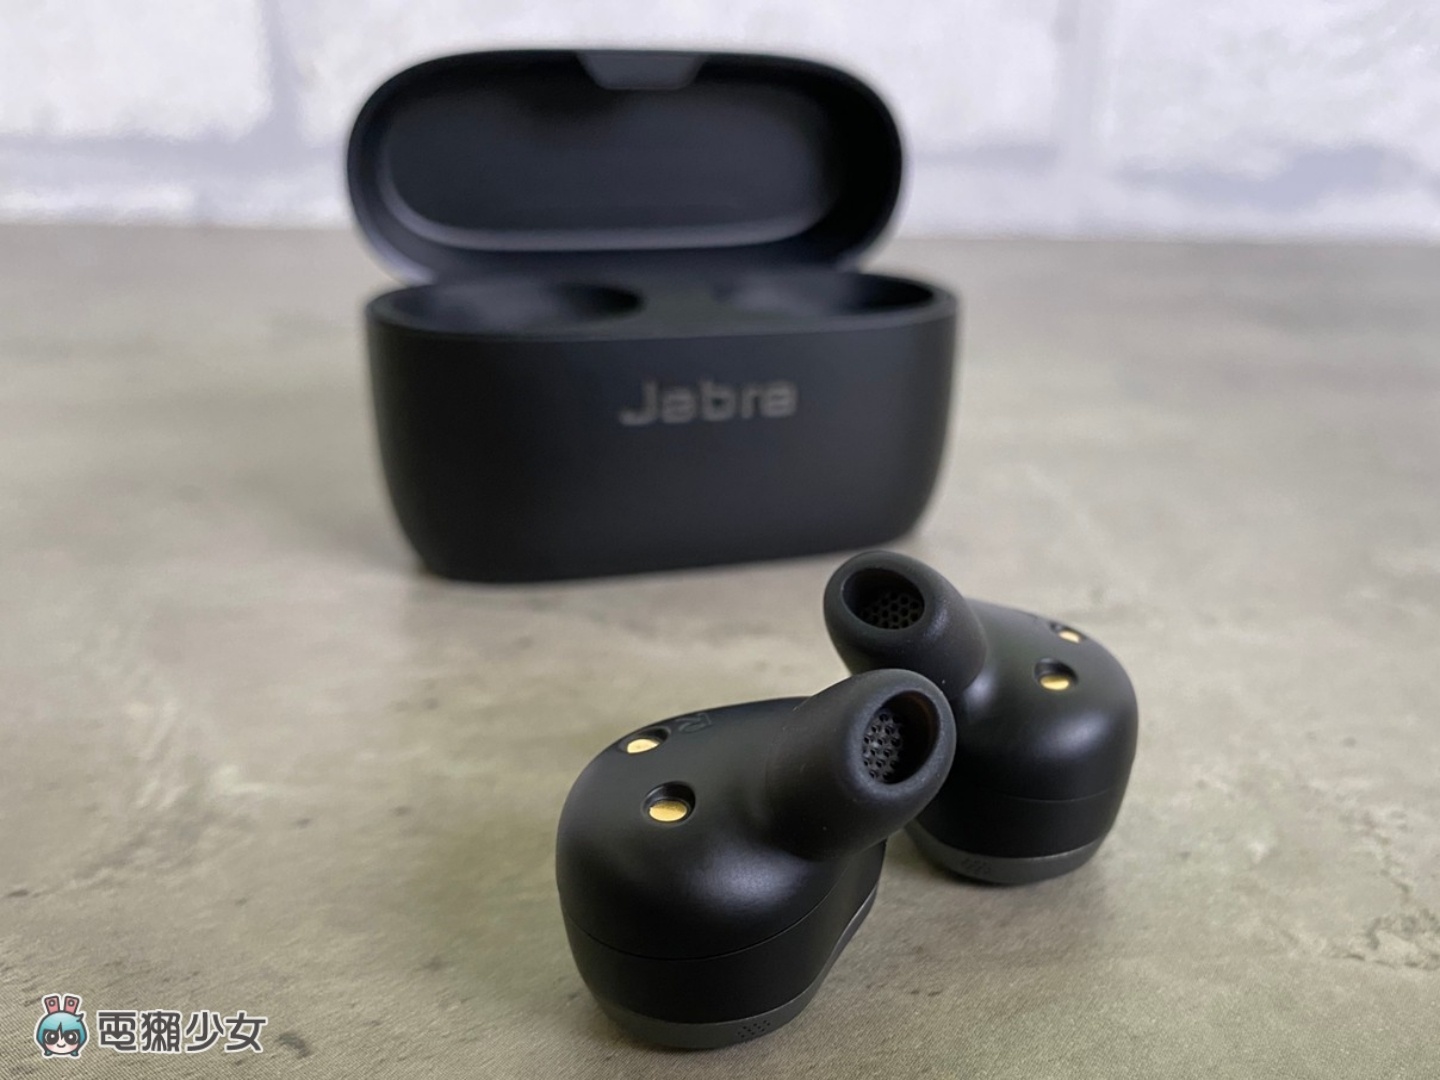 超清晰通話品質！『 Jabra Elite 85t 』搭載 6 組麥克風 還有 12mm 大動圈給你好音質